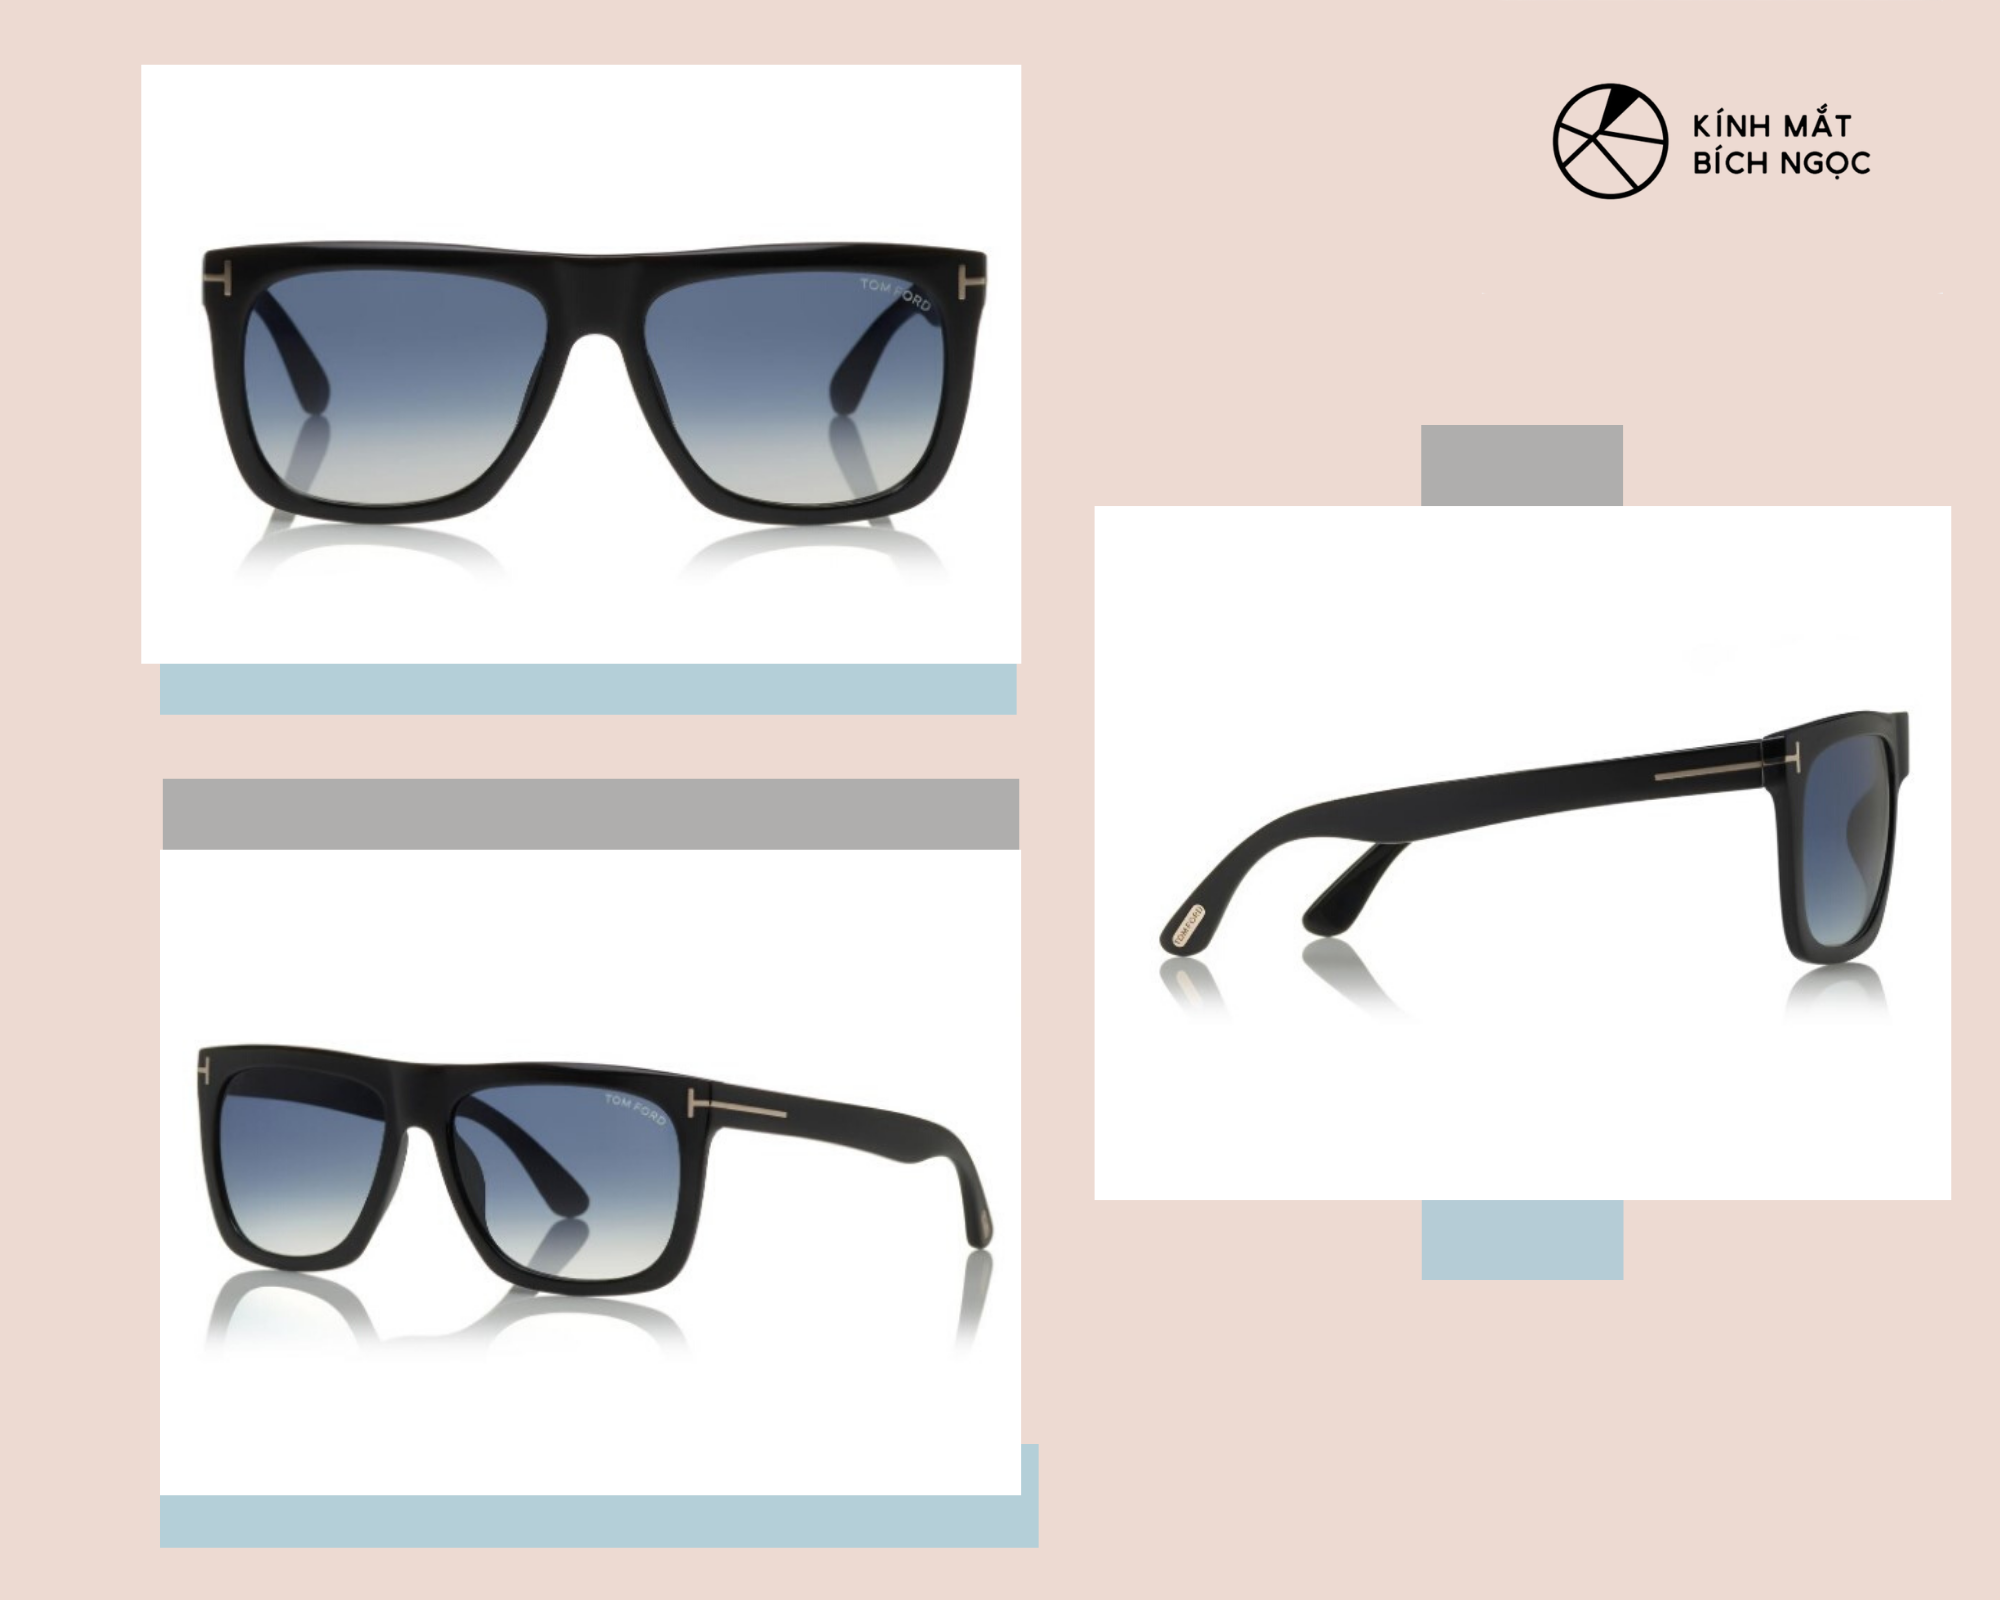 Thiết kế mẫu kính Tom Ford nam chính hãng Morgan Sunglasses có giá 395$